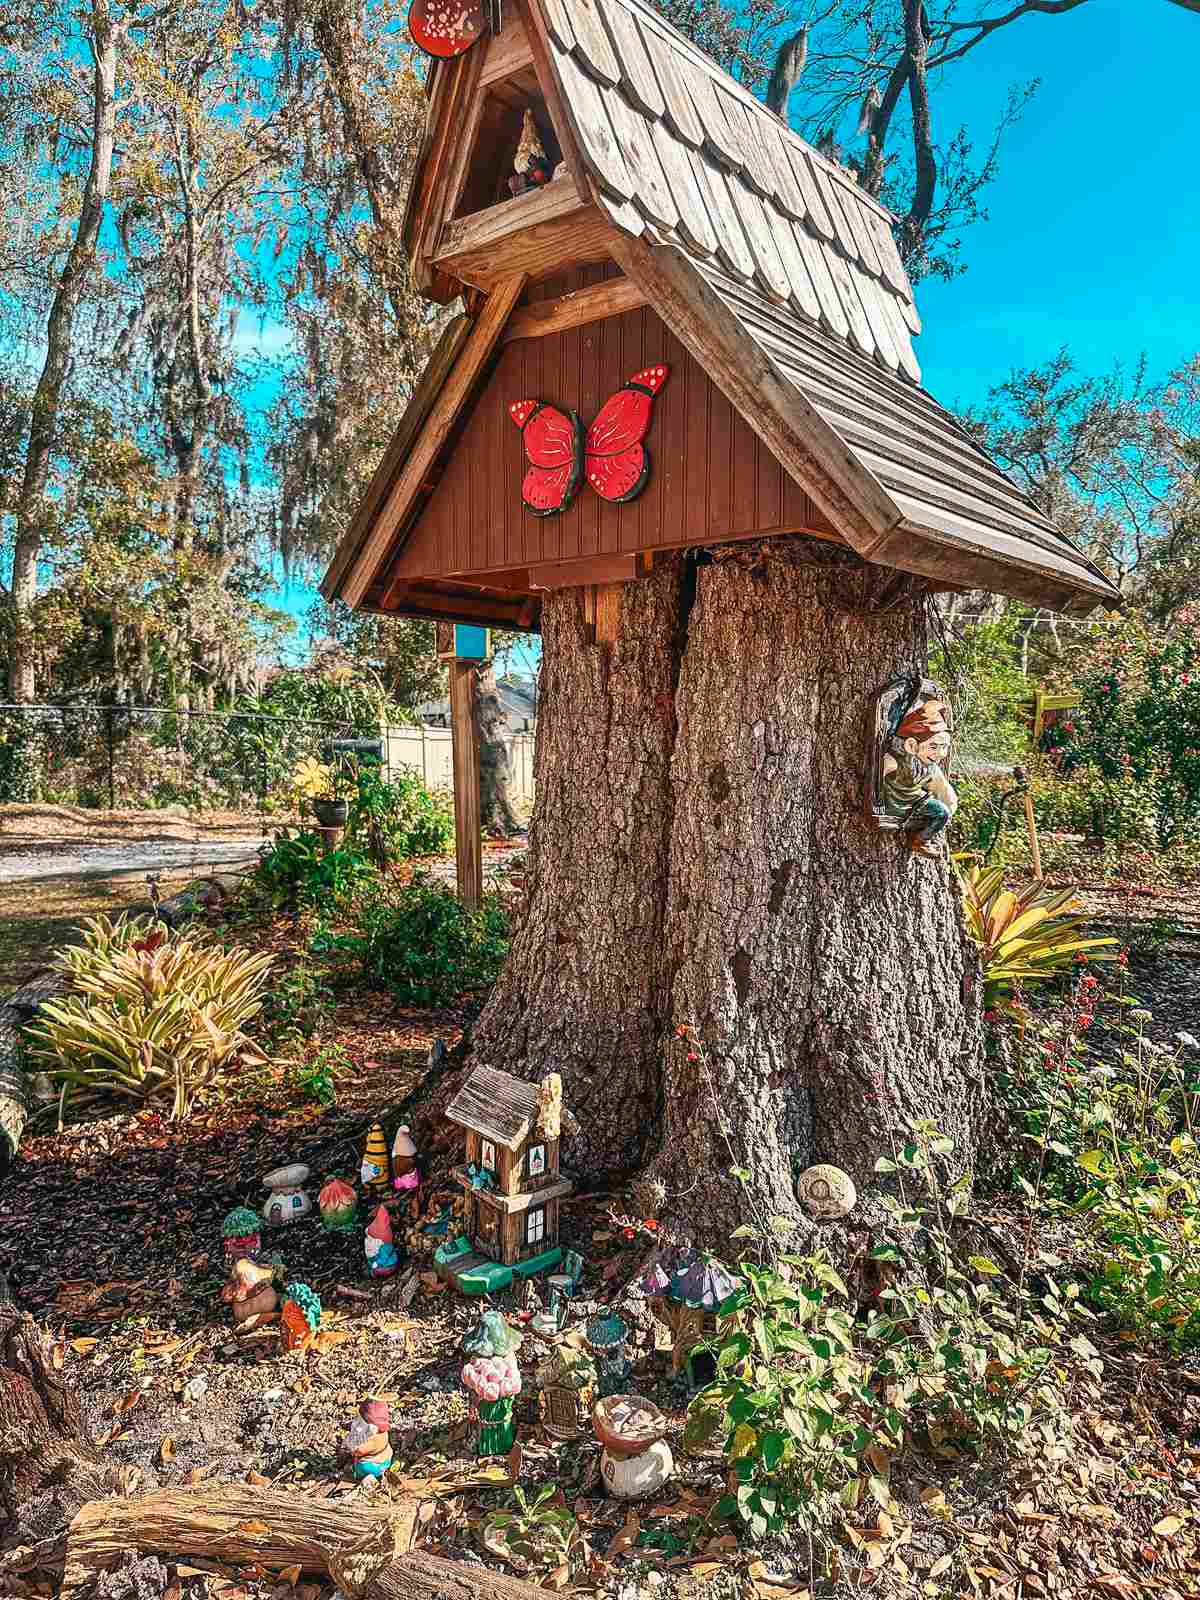 Mini gnome village Folly Farms Nature Preserve in Safety Harbor